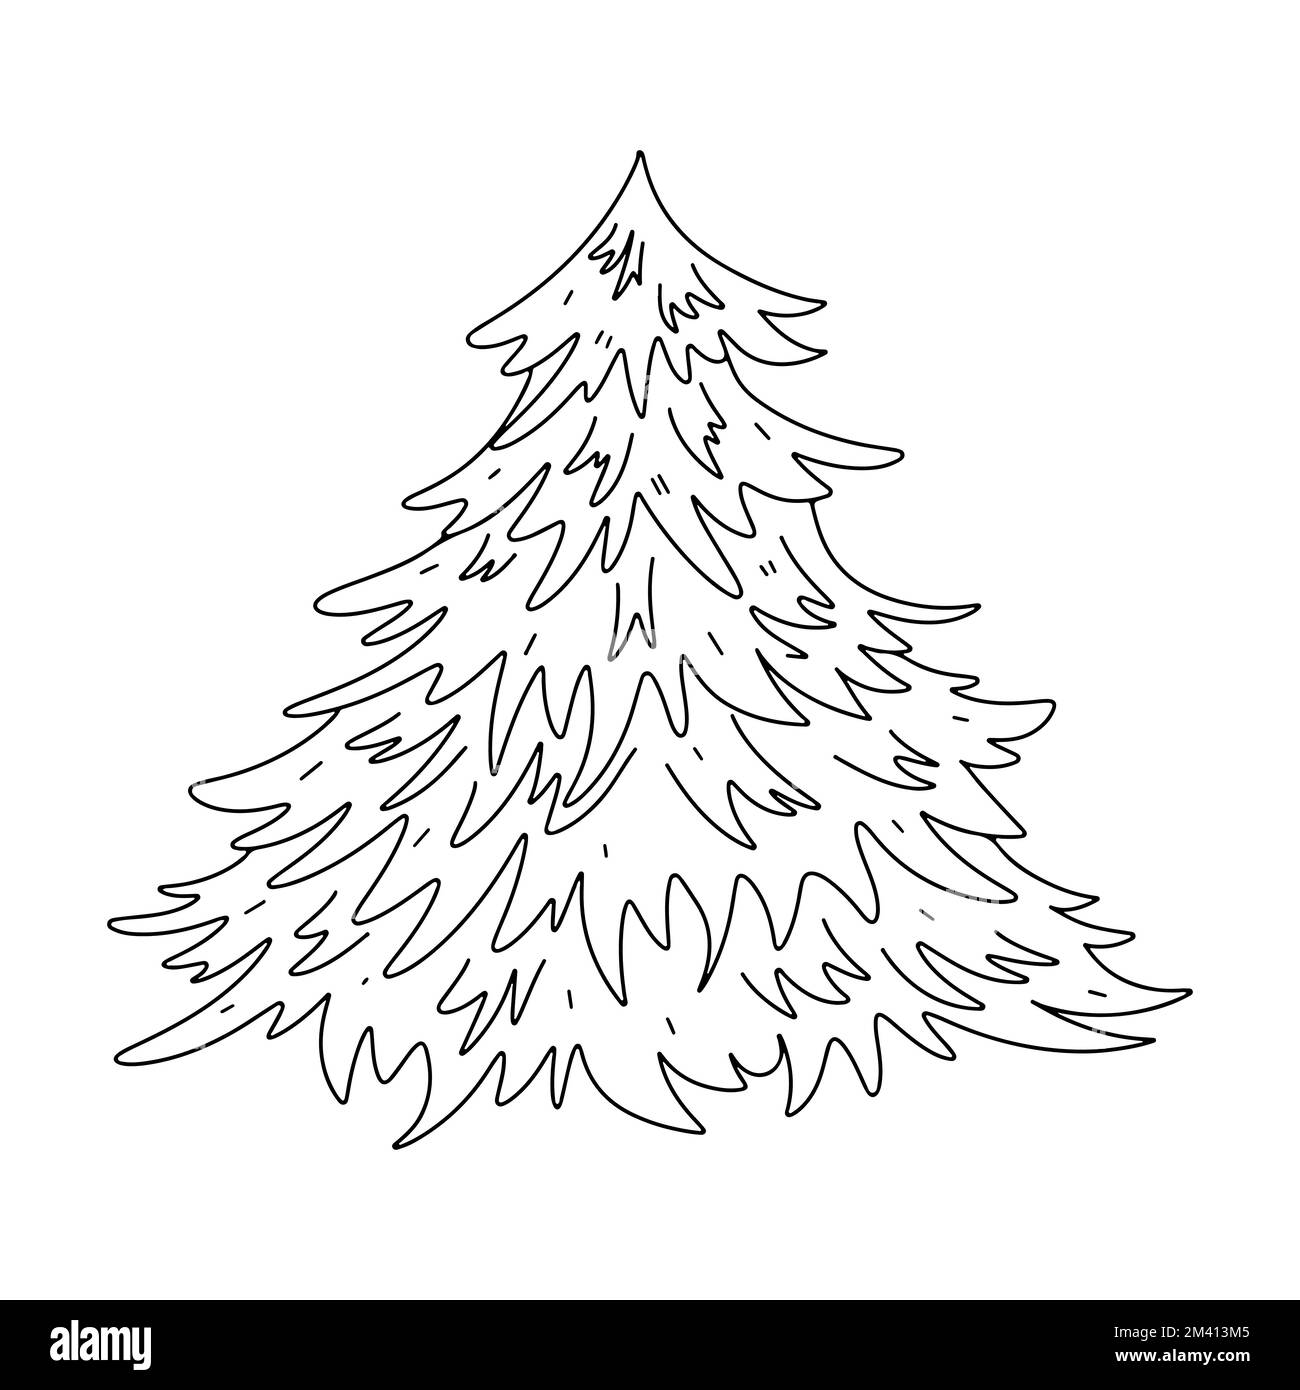 Tannenbaum im handgezeichneten Kritzelstil. Malseite für Kinder. Weihnachtsbaum-Vektordarstellung. Stock Vektor